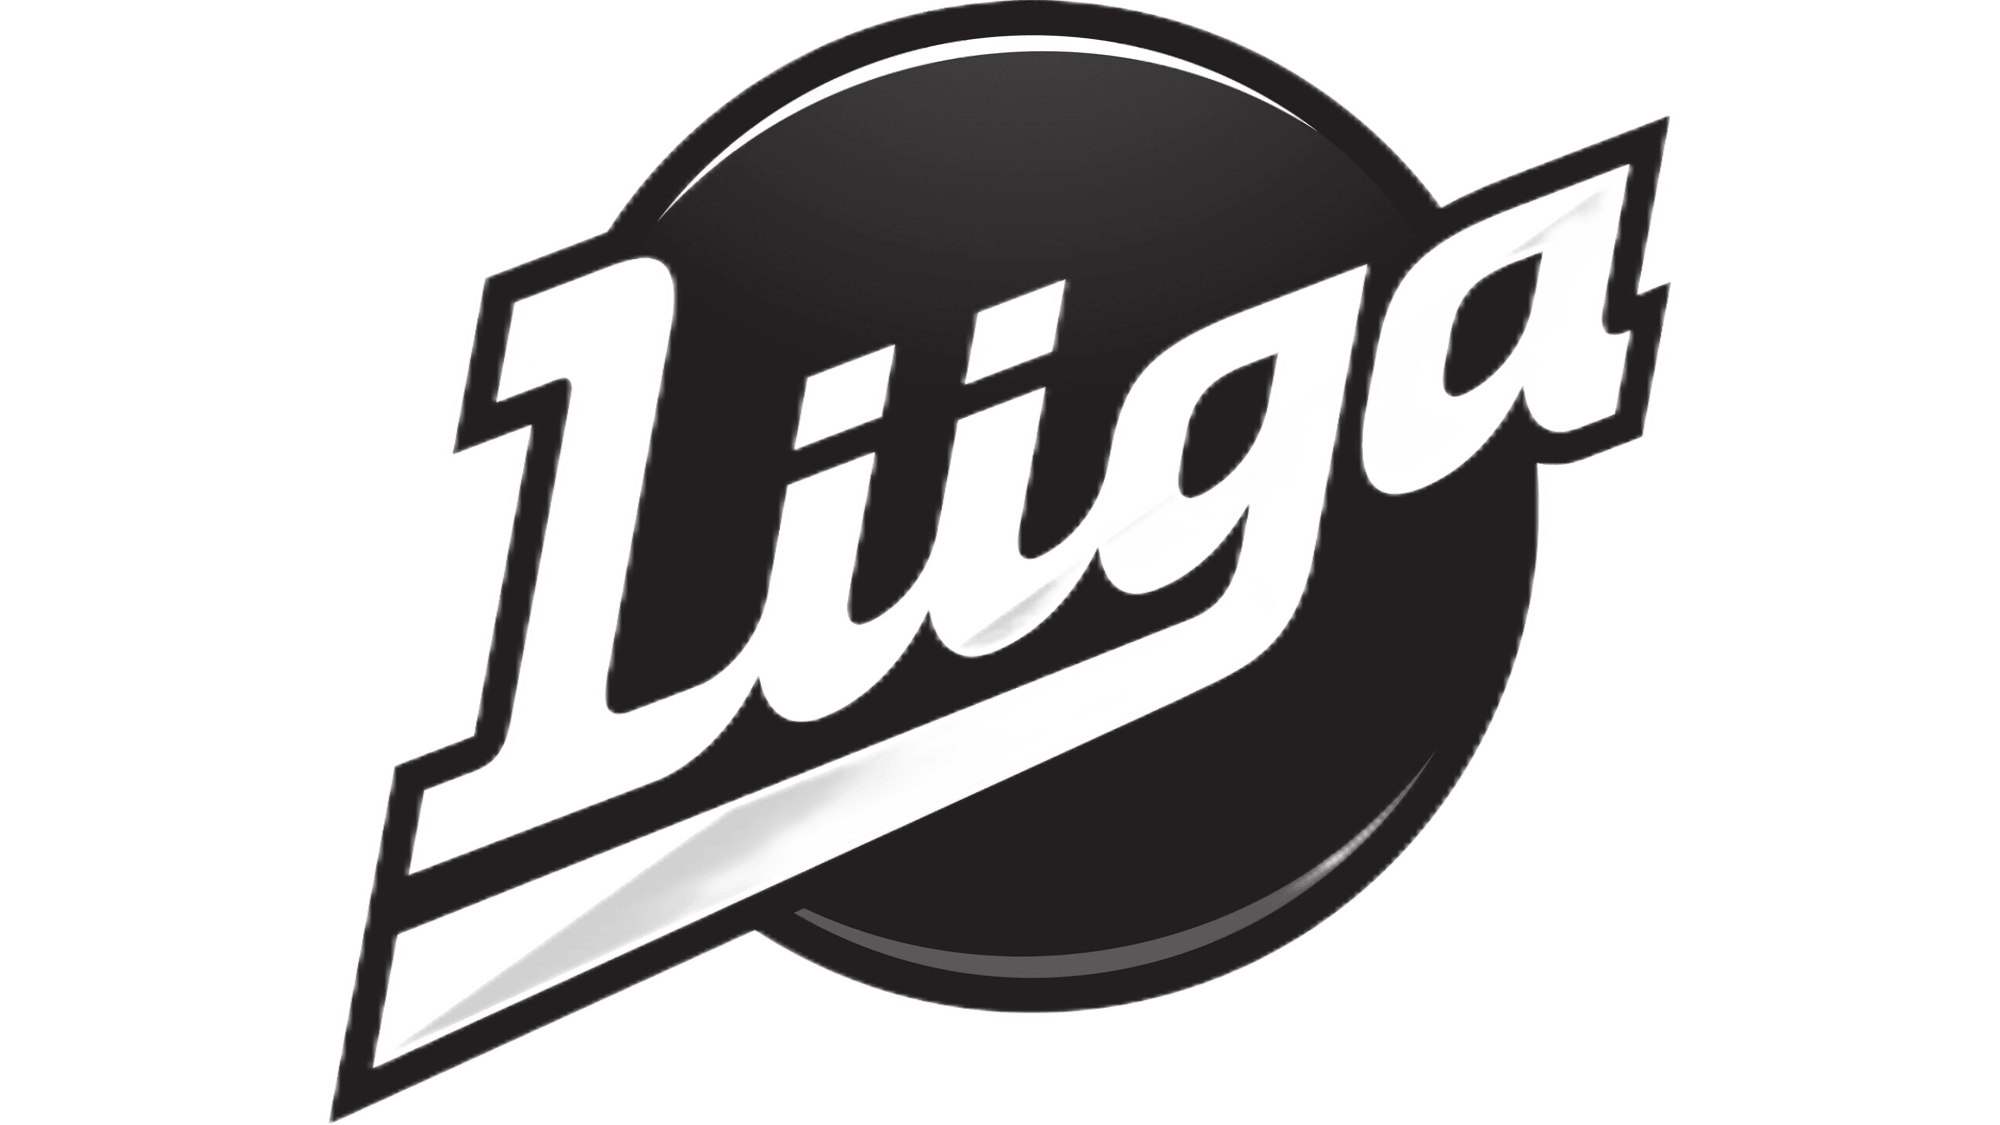 Liiga-logo-transformed